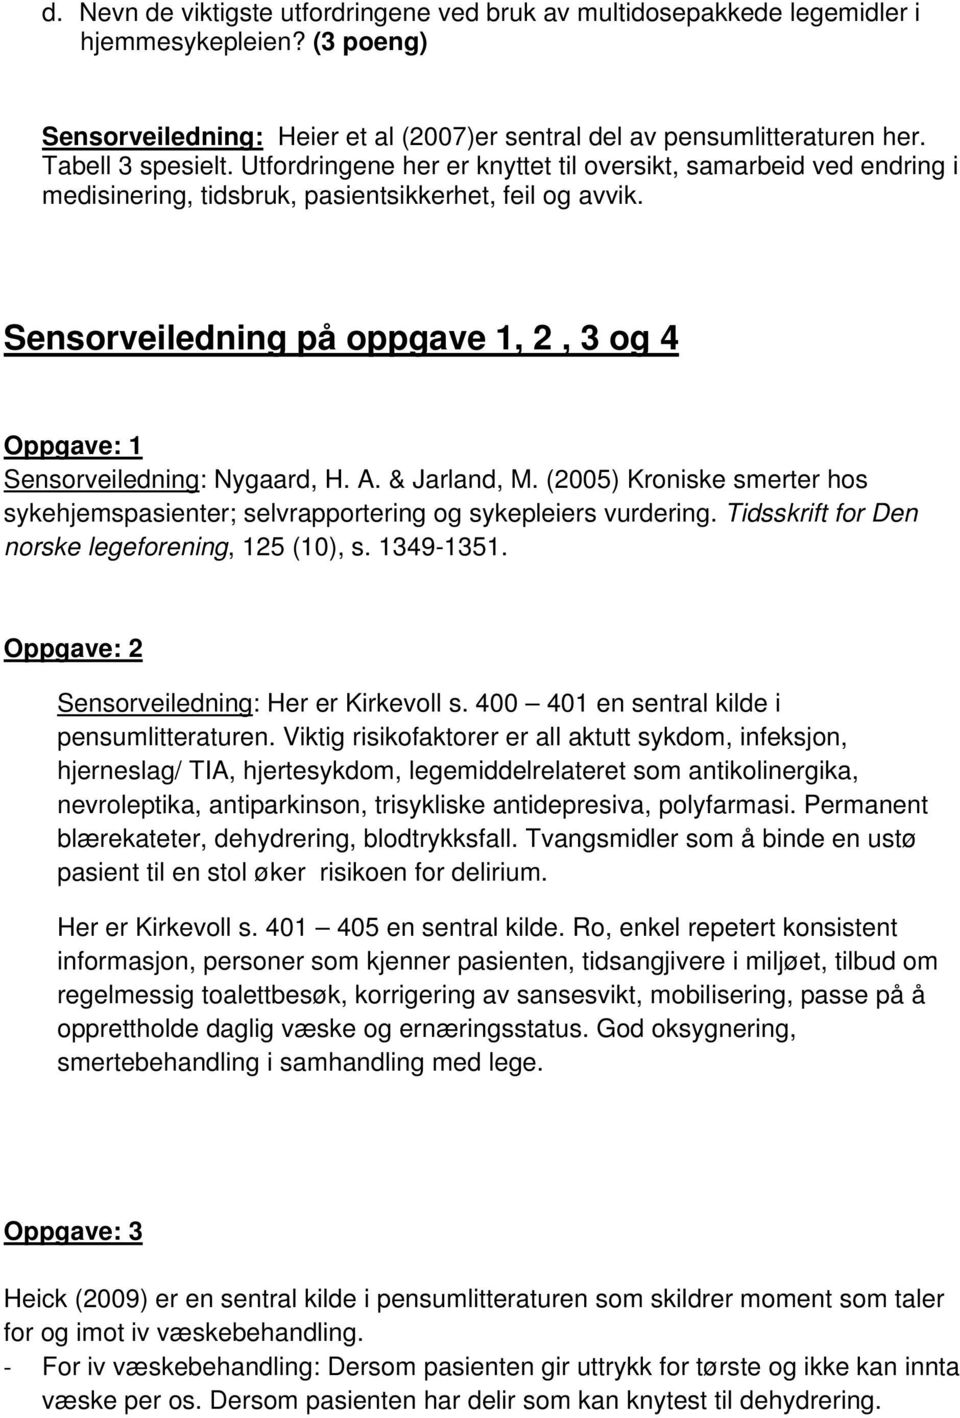 Sensorveiledning på oppgave 1, 2, 3 og 4 Oppgave: 1 Sensorveiledning: Nygaard, H. A. & Jarland, M. (2005) Kroniske smerter hos sykehjemspasienter; selvrapportering og sykepleiers vurdering.